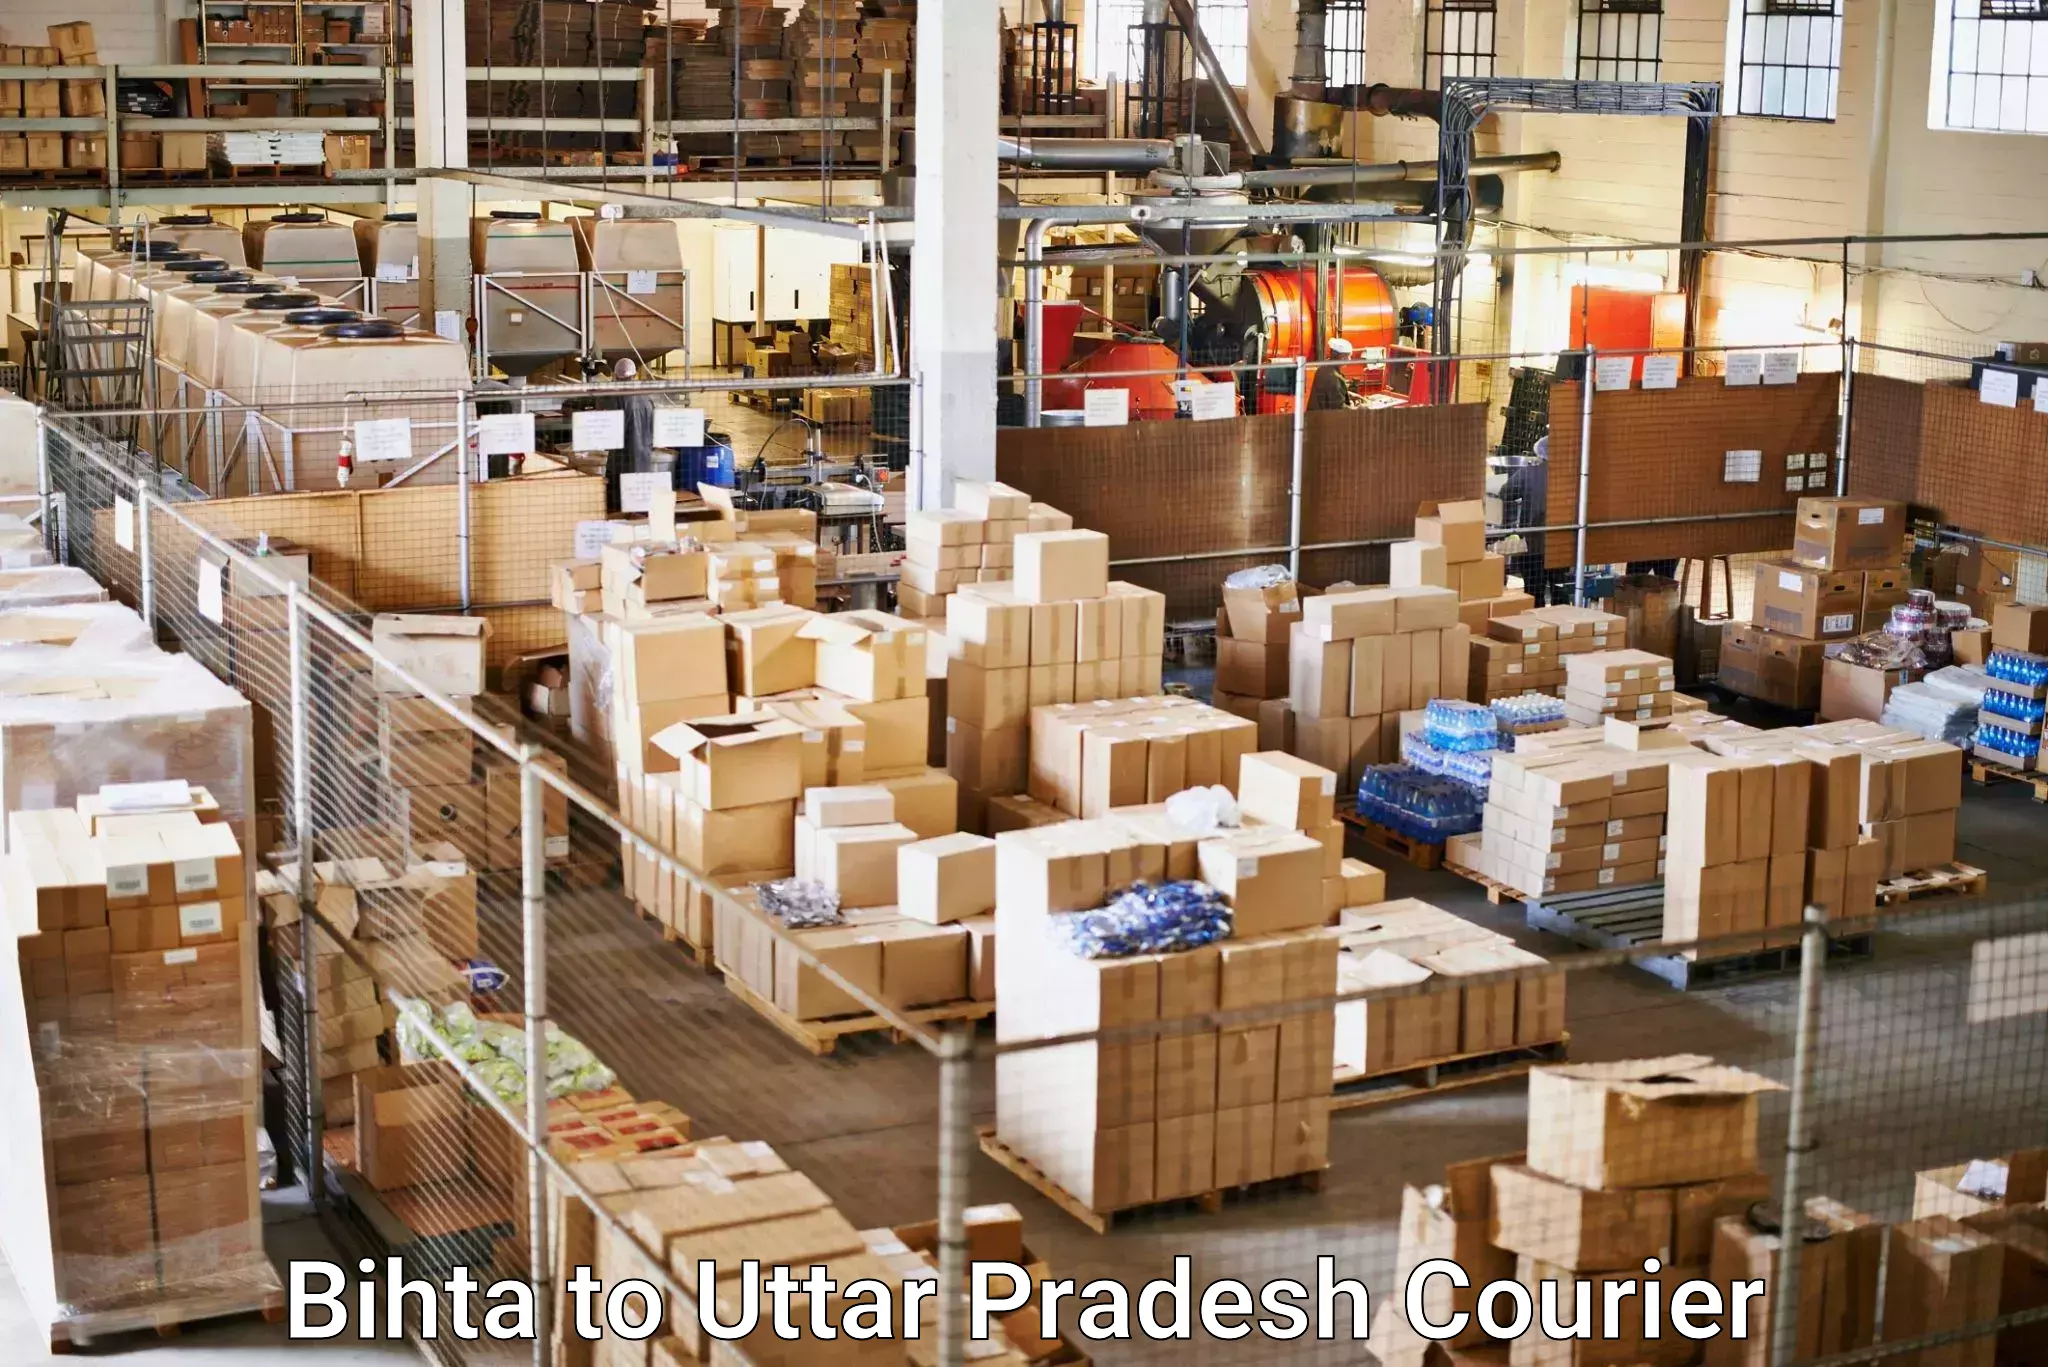 Customer-oriented courier services Bihta to Uttar Pradesh